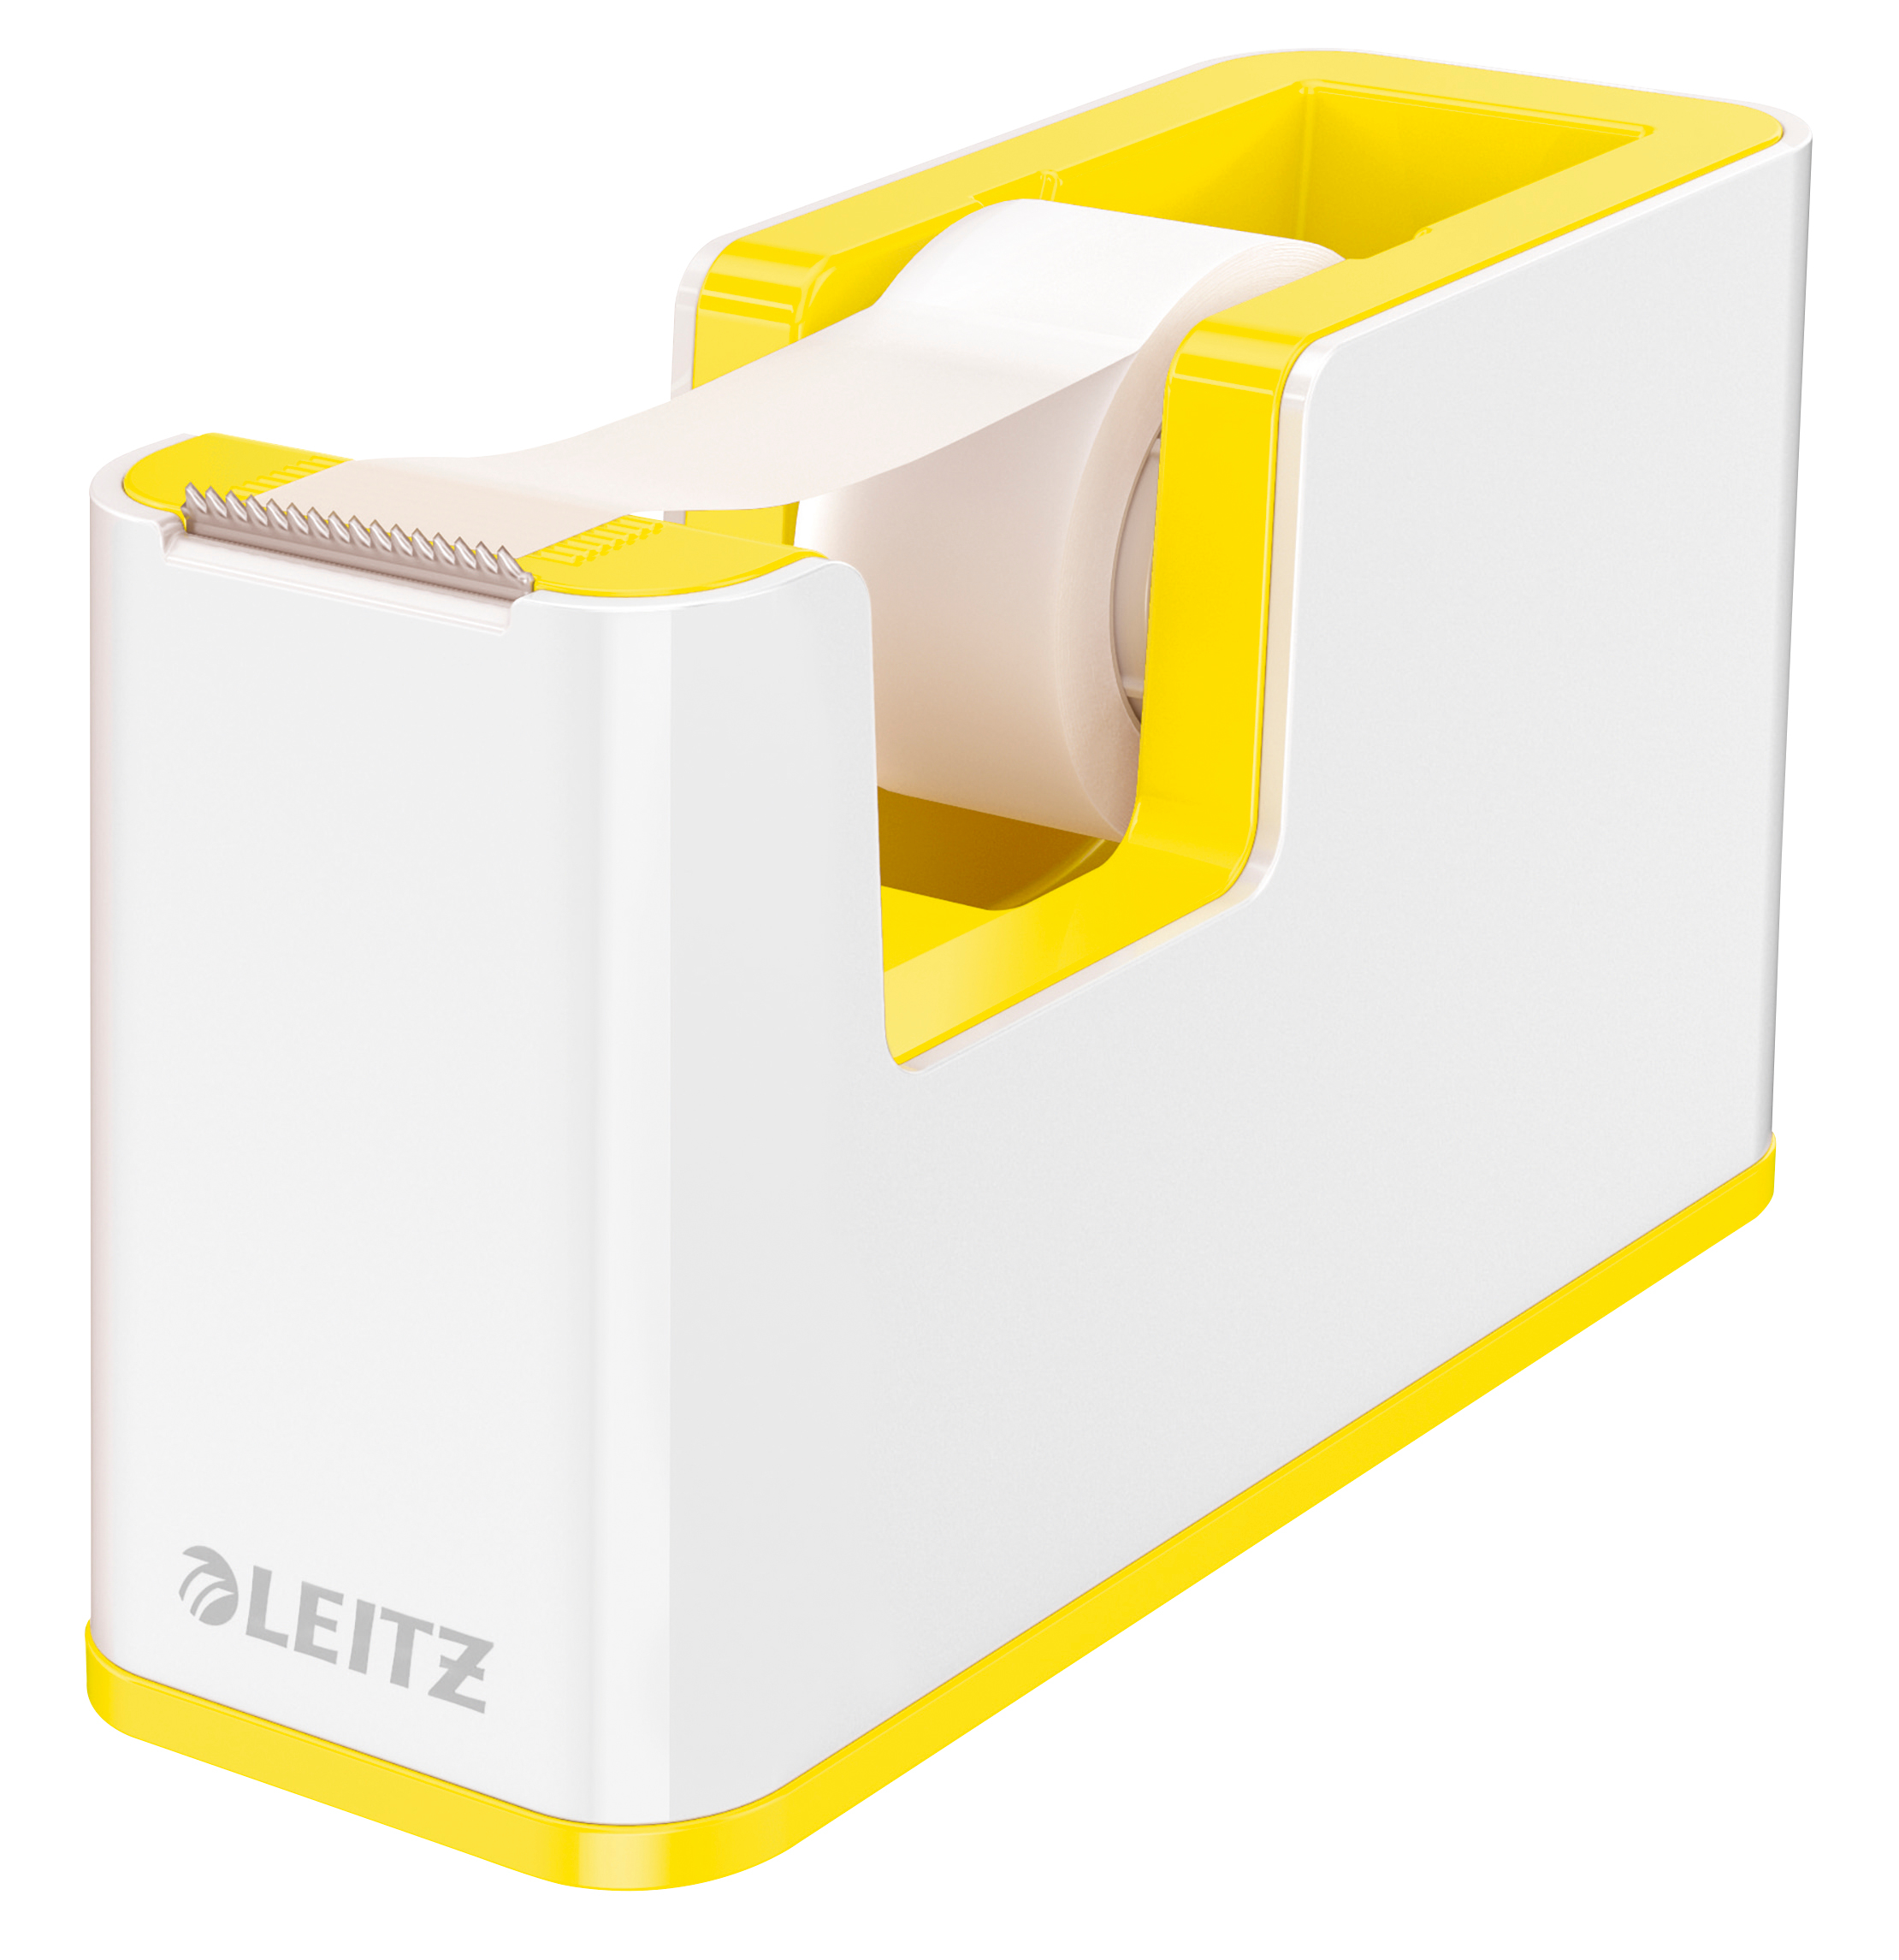 LEITZ Tape Dispenser WOW 19mmx33m 5364-10-16 blanc/jaune